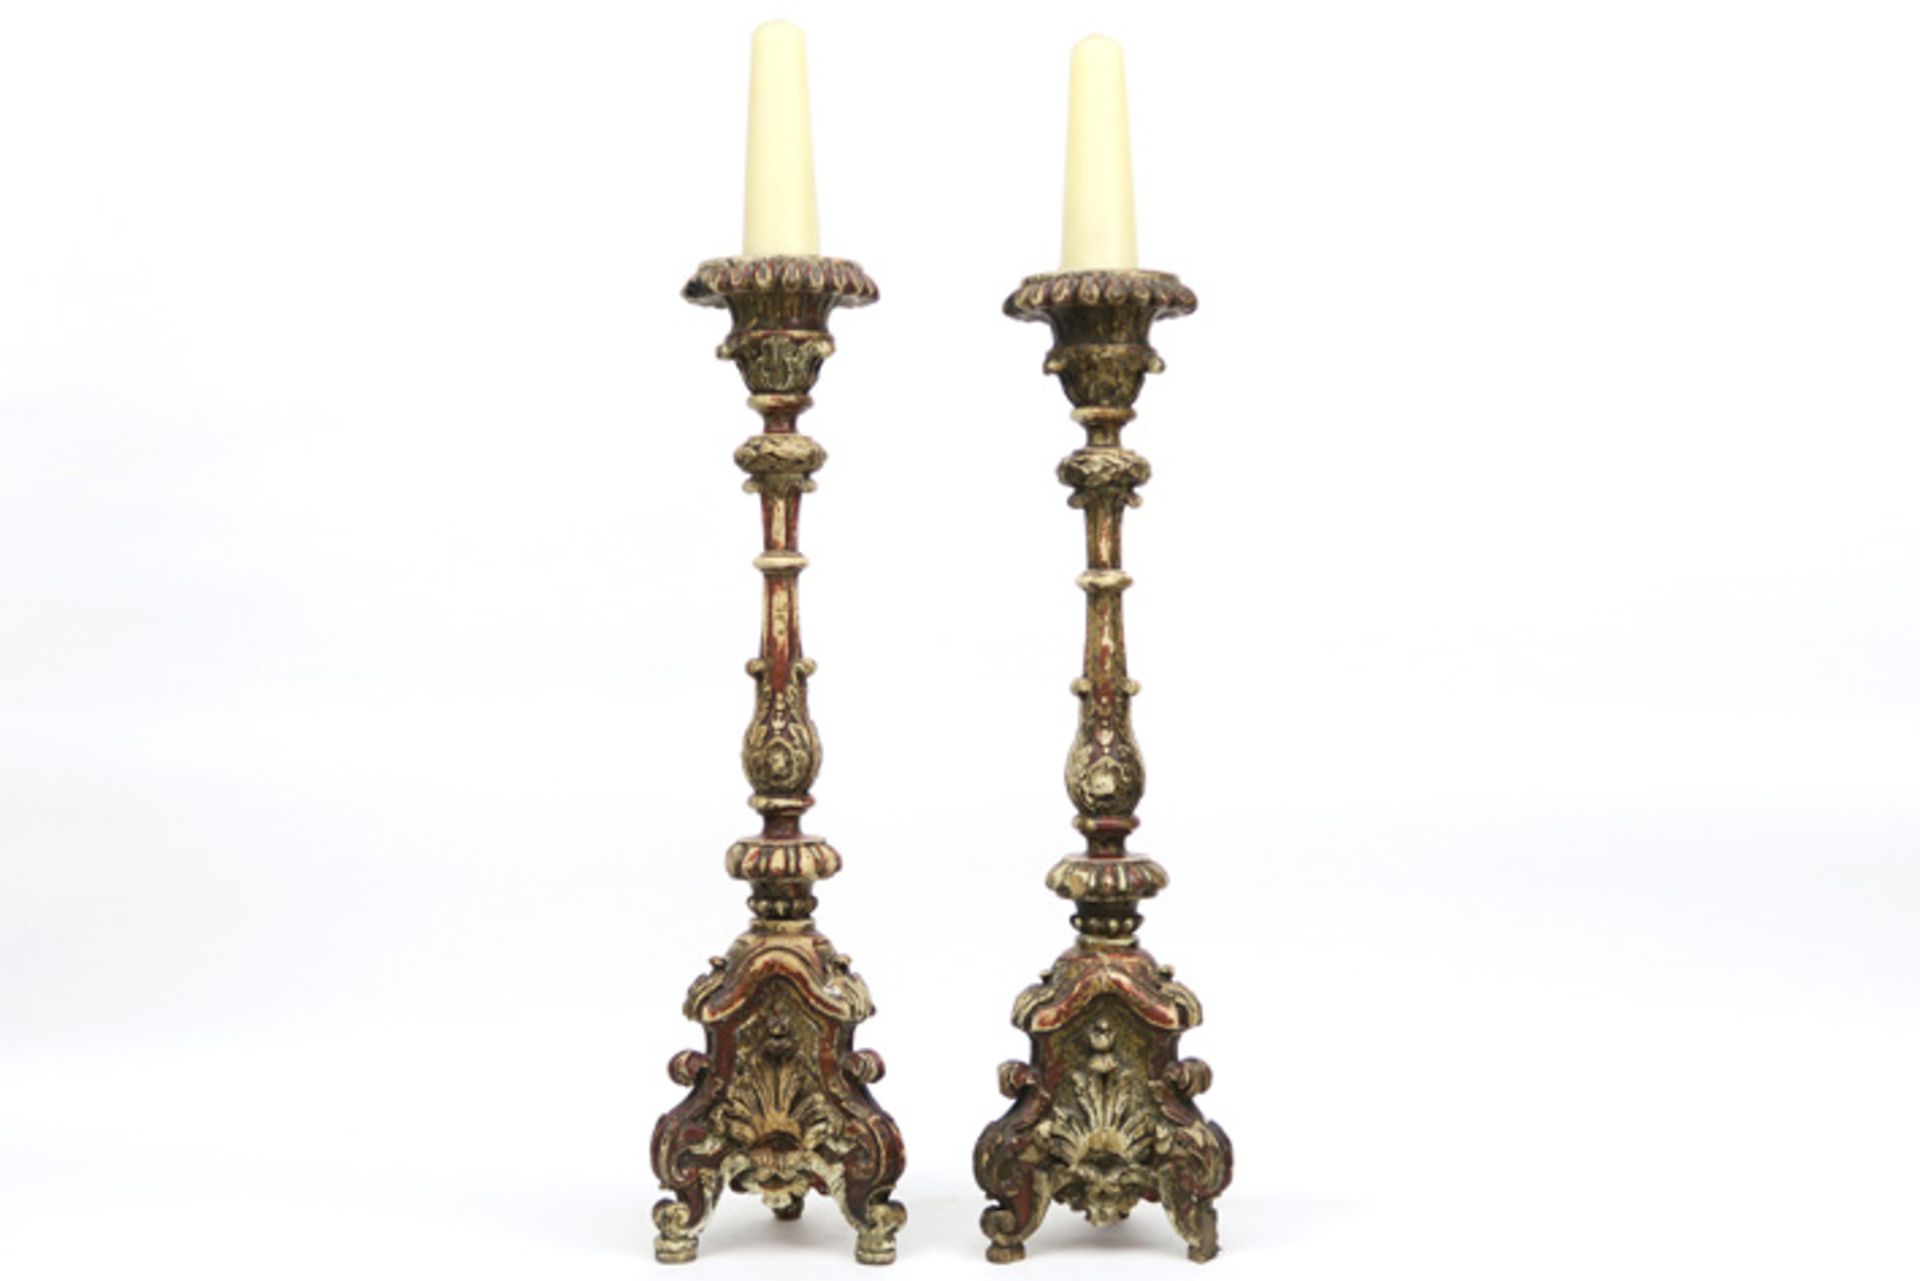 pair of antique baroque style candlesticks in polychromed wood || Paar antieke barokke kandelaars in